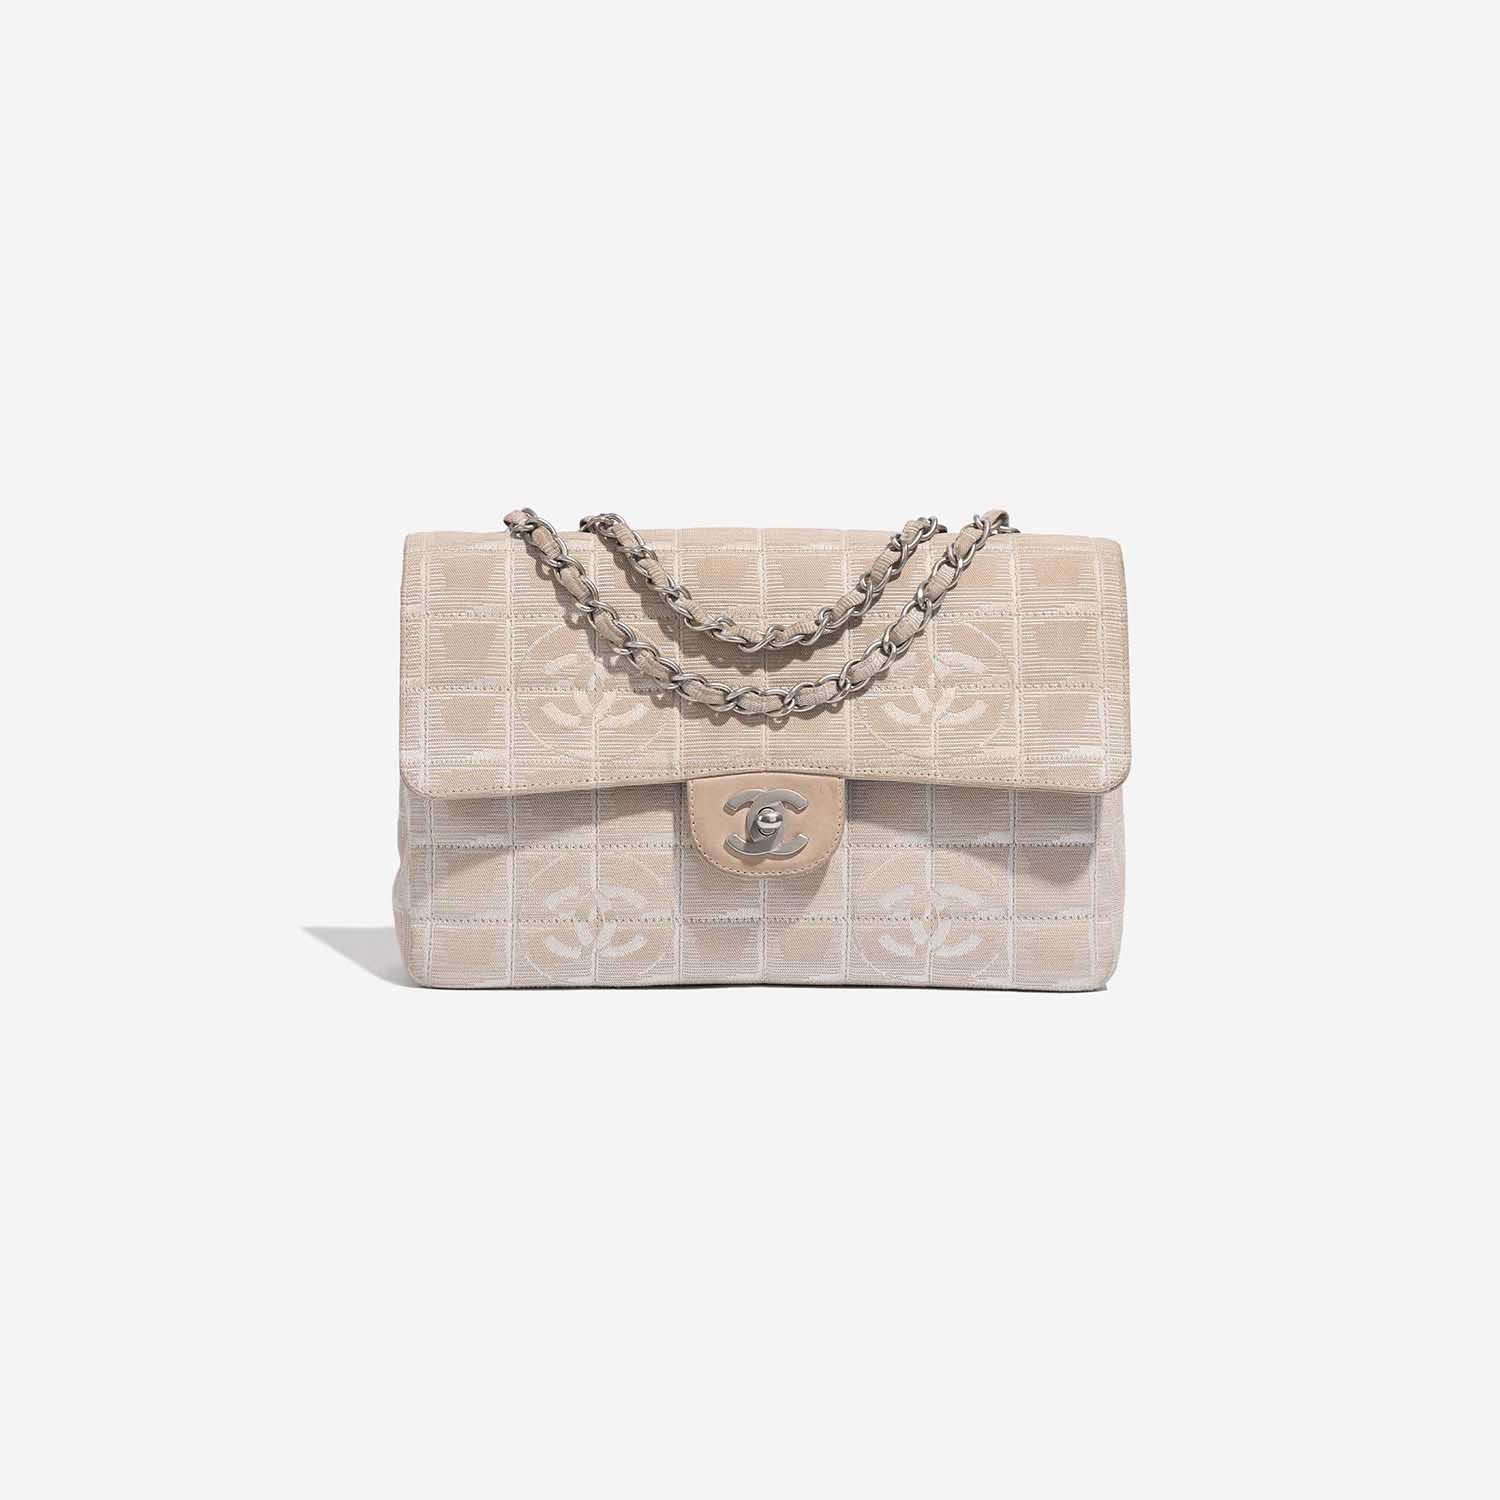 Chanel Timeless Medium Beige Front | Verkaufen Sie Ihre Designer-Tasche auf Saclab.com